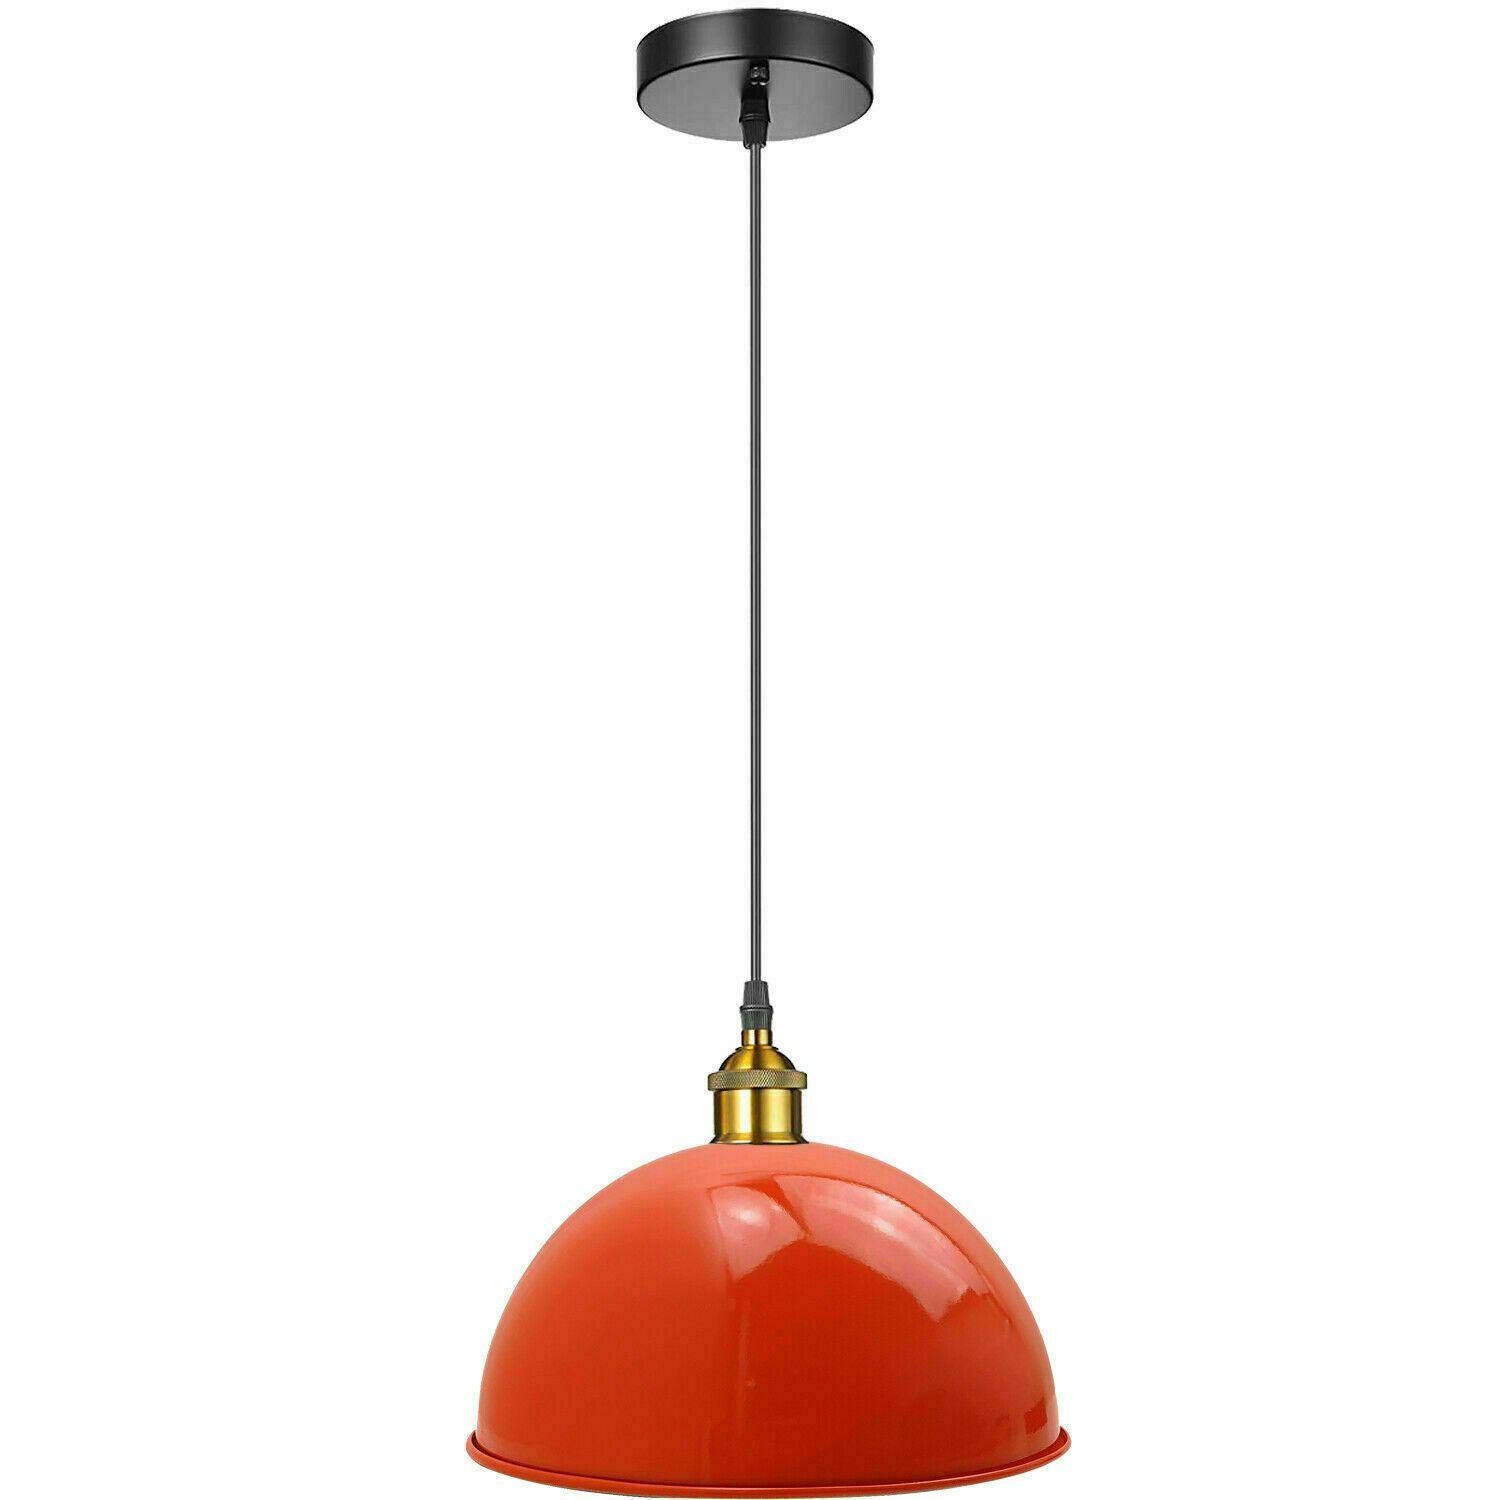 Vintage Modern Orange Metal Shade Ceiling Pendant Light Indoor Light Fitting With 95cm Adjustable Wire~1271 - LEDSone UK Ltd